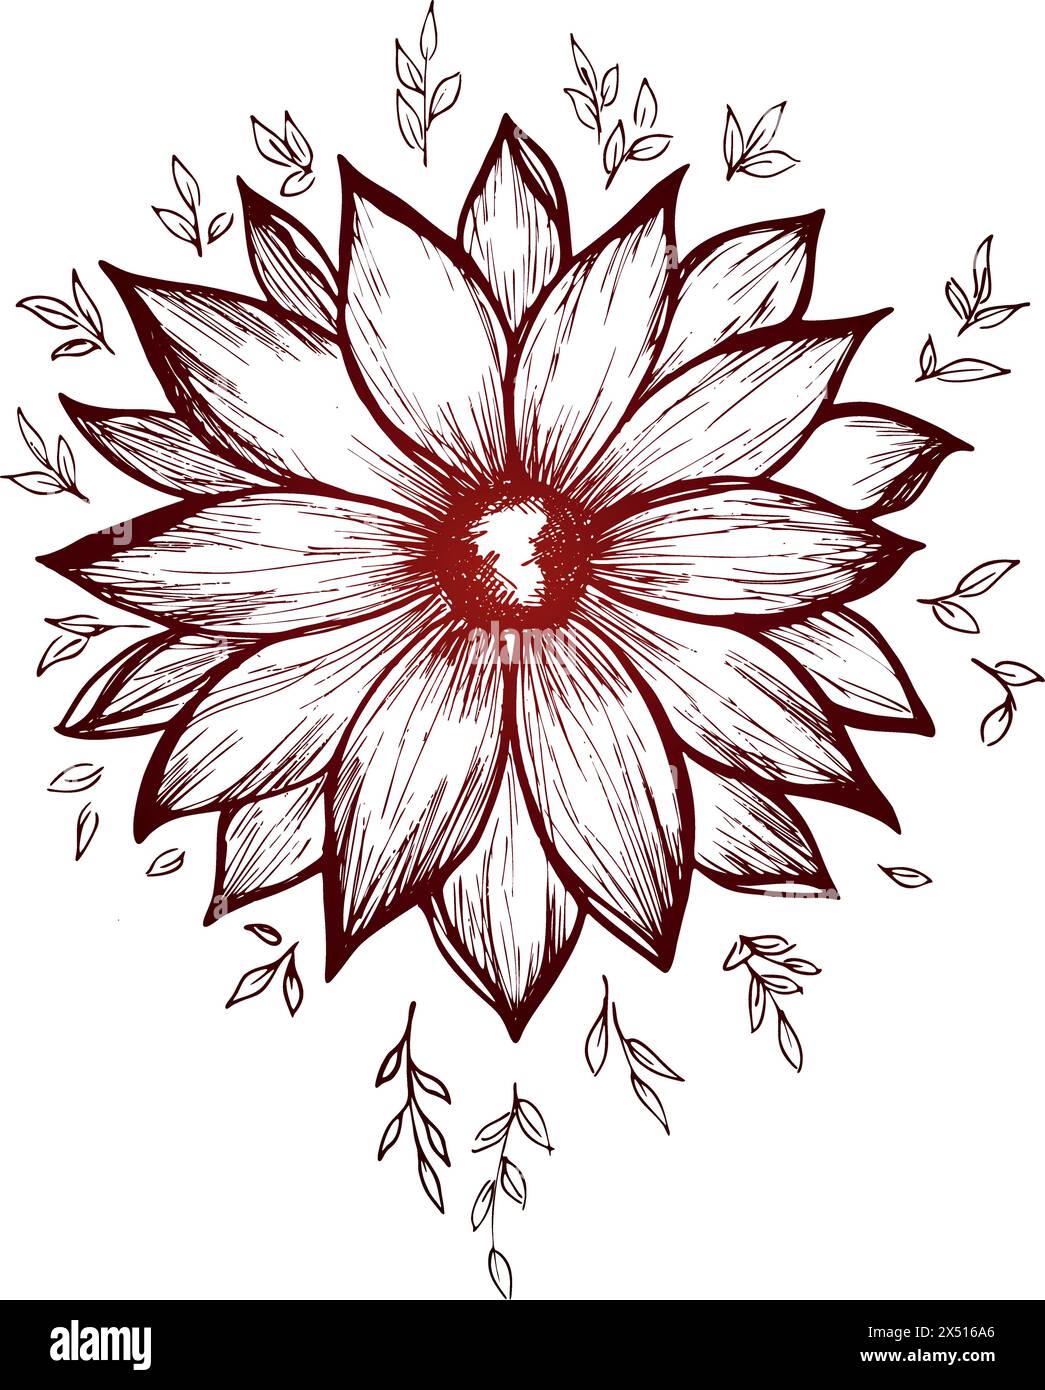 Vektor-rote Blumenkunst. Farbige Illustration von Blumen im Stil der Strichkunst. Stock Vektor